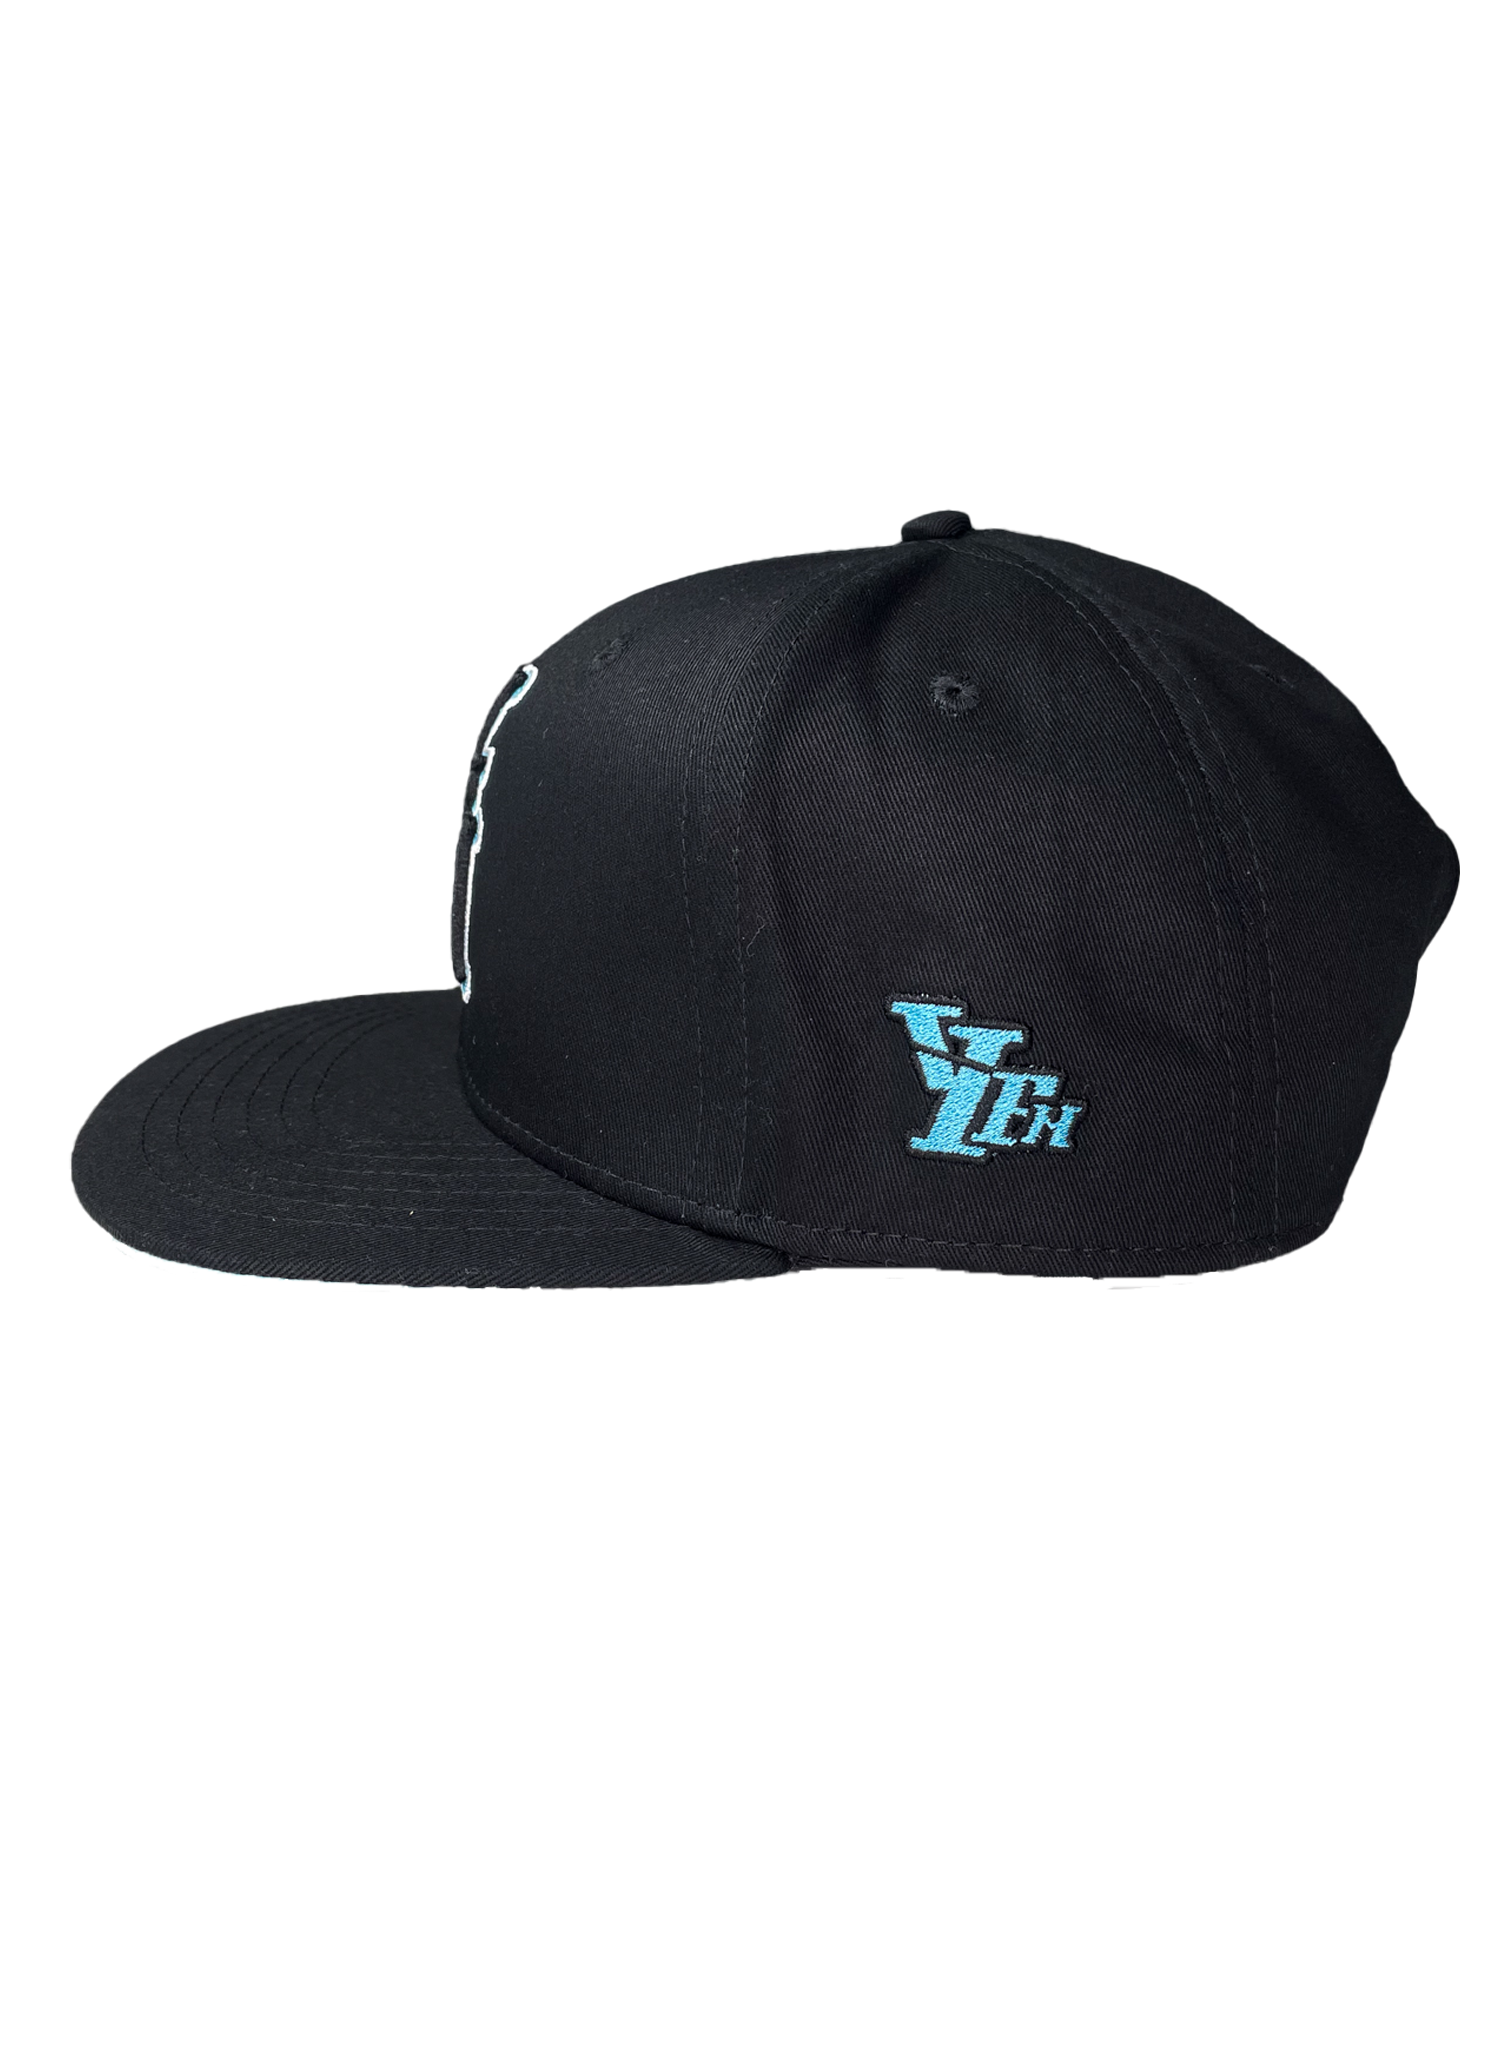 YFM CAP BLACK